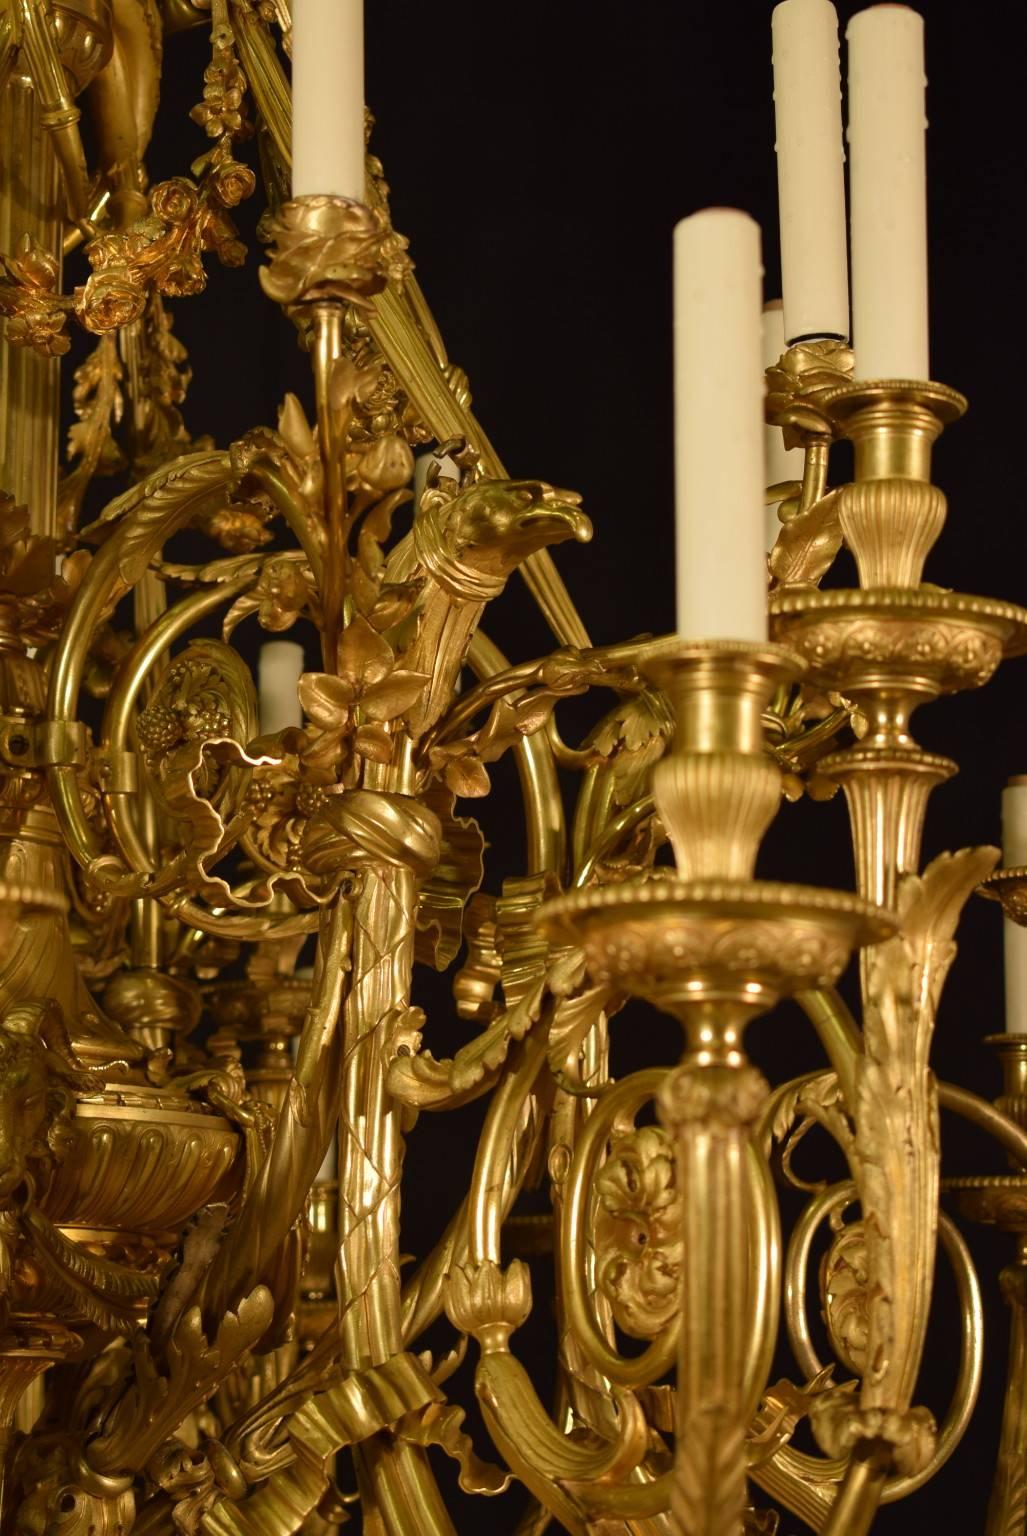 Prächtiger Kronleuchter aus der Mitte des 19. Jahrhunderts mit originaler Quecksilbervergoldung, die einen reichen Kontrast zwischen matten und brünierten Flächen aufweist. Der Kronleuchter weist eine Fülle neoklassizistischer Ornamente auf, wie